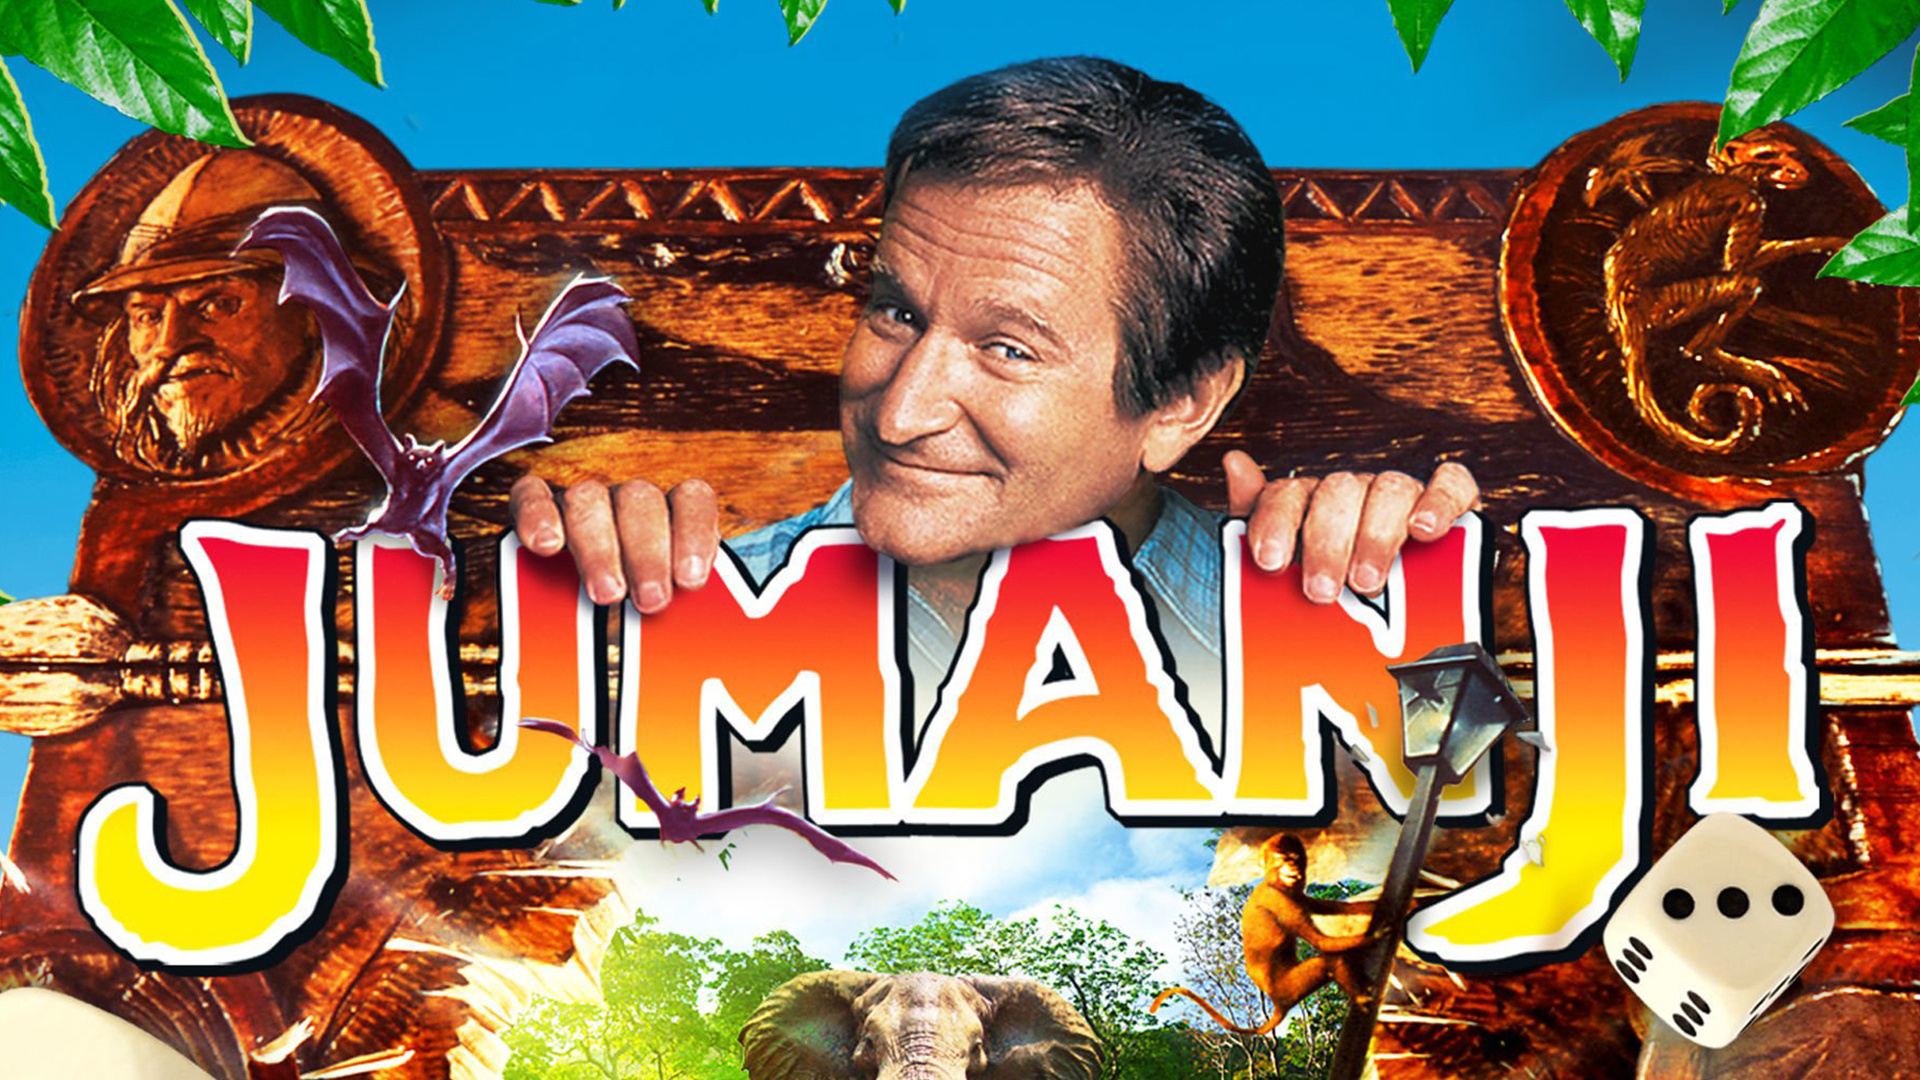 Jumanji, Mysterious world, 25th anniversary, Robin Williams, 1920x1080 Full HD Desktop